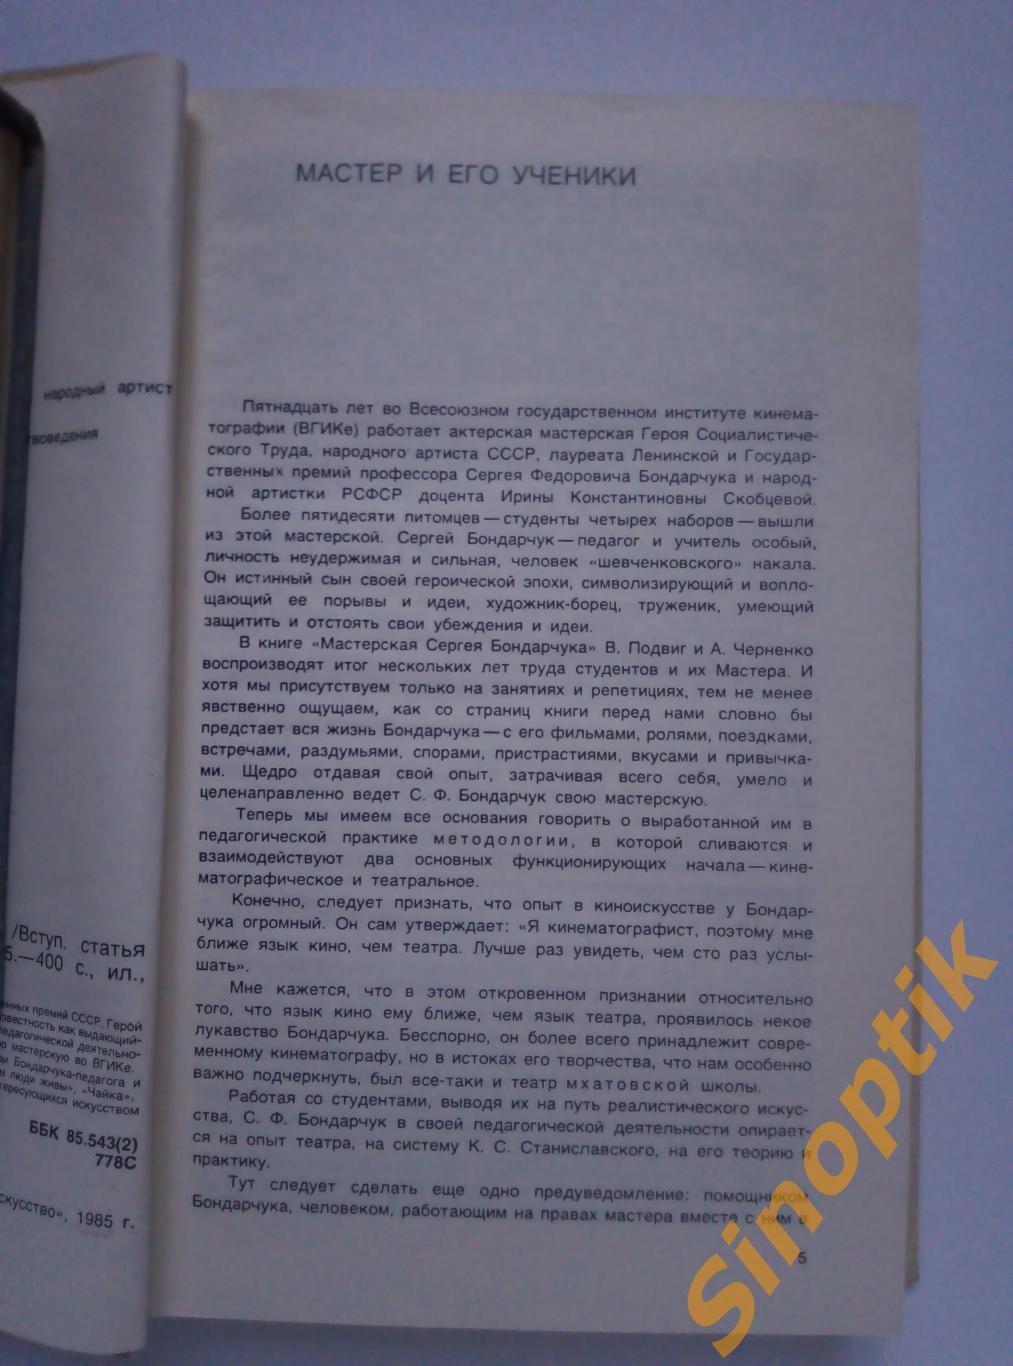 Мастерская Сергея Бондарчука, Черненко А. Ф., Подвиг В. П. 1985 2